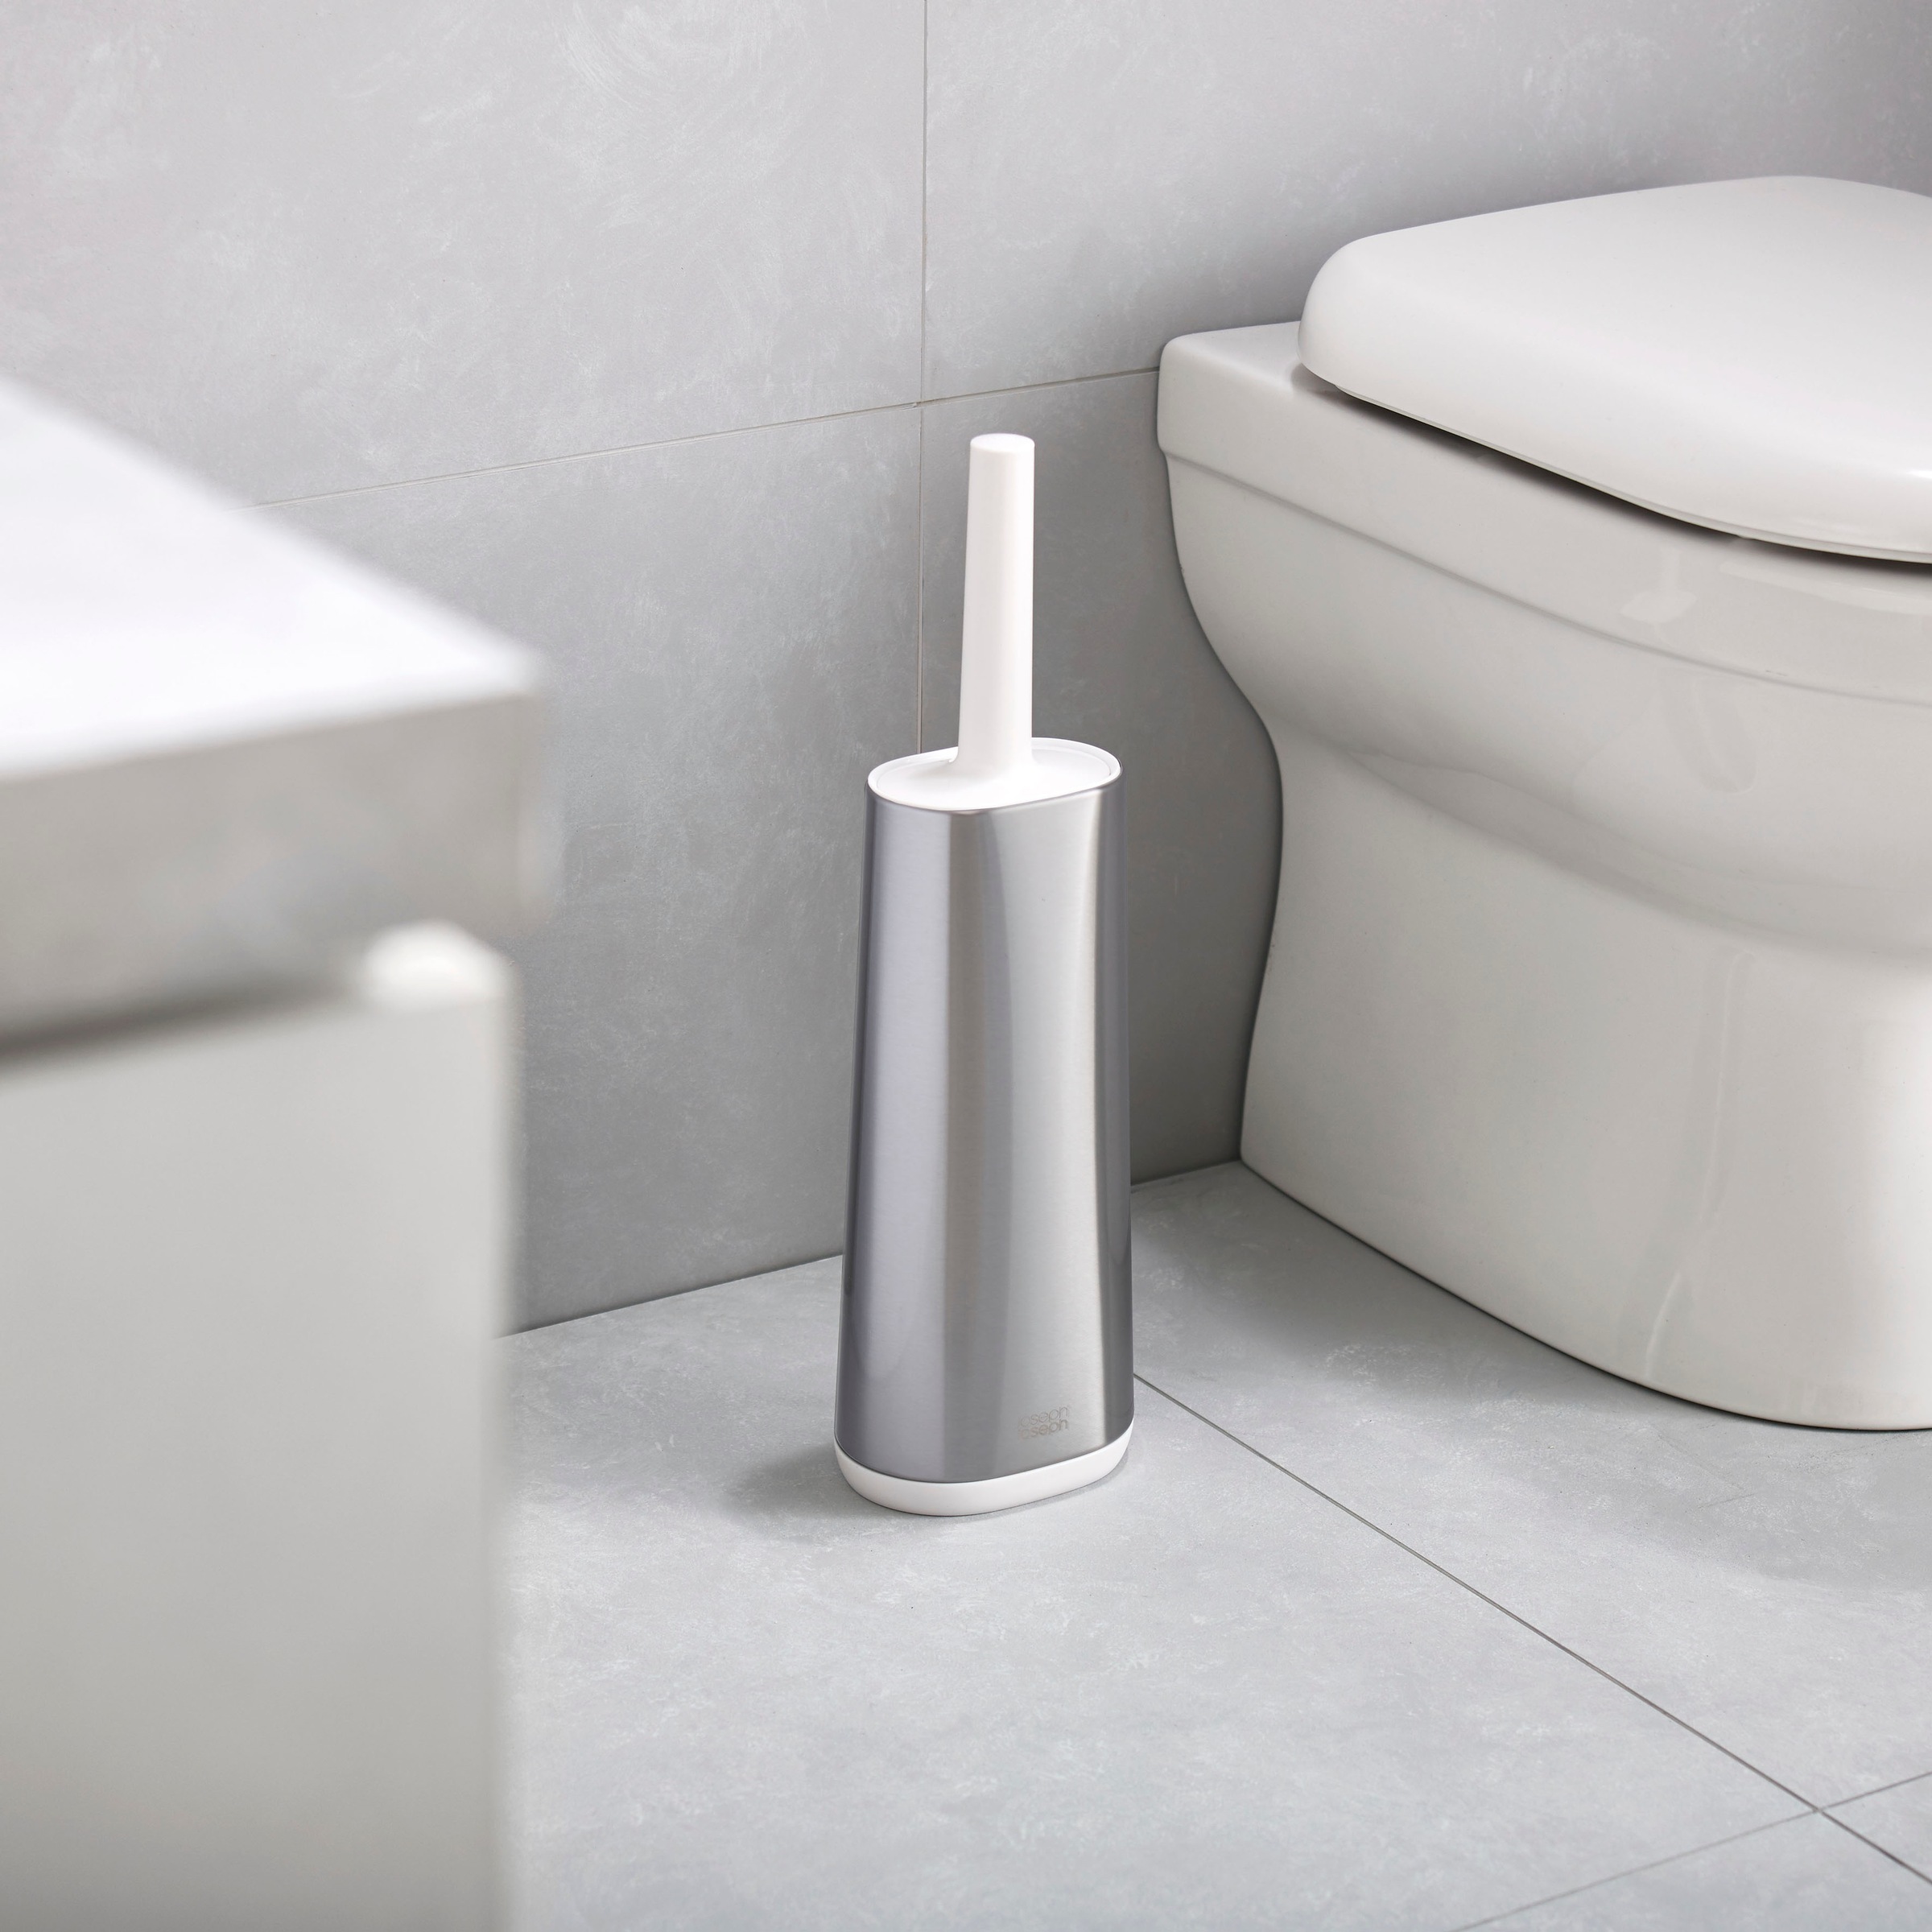 Joseph Joseph WC-Reinigungsbürste »Flex™ Plus«, Set, 2 St., aus Kunststoff-Edelstahl, mit Ständer, Tropfschutz & Antiverstopfungsdesign